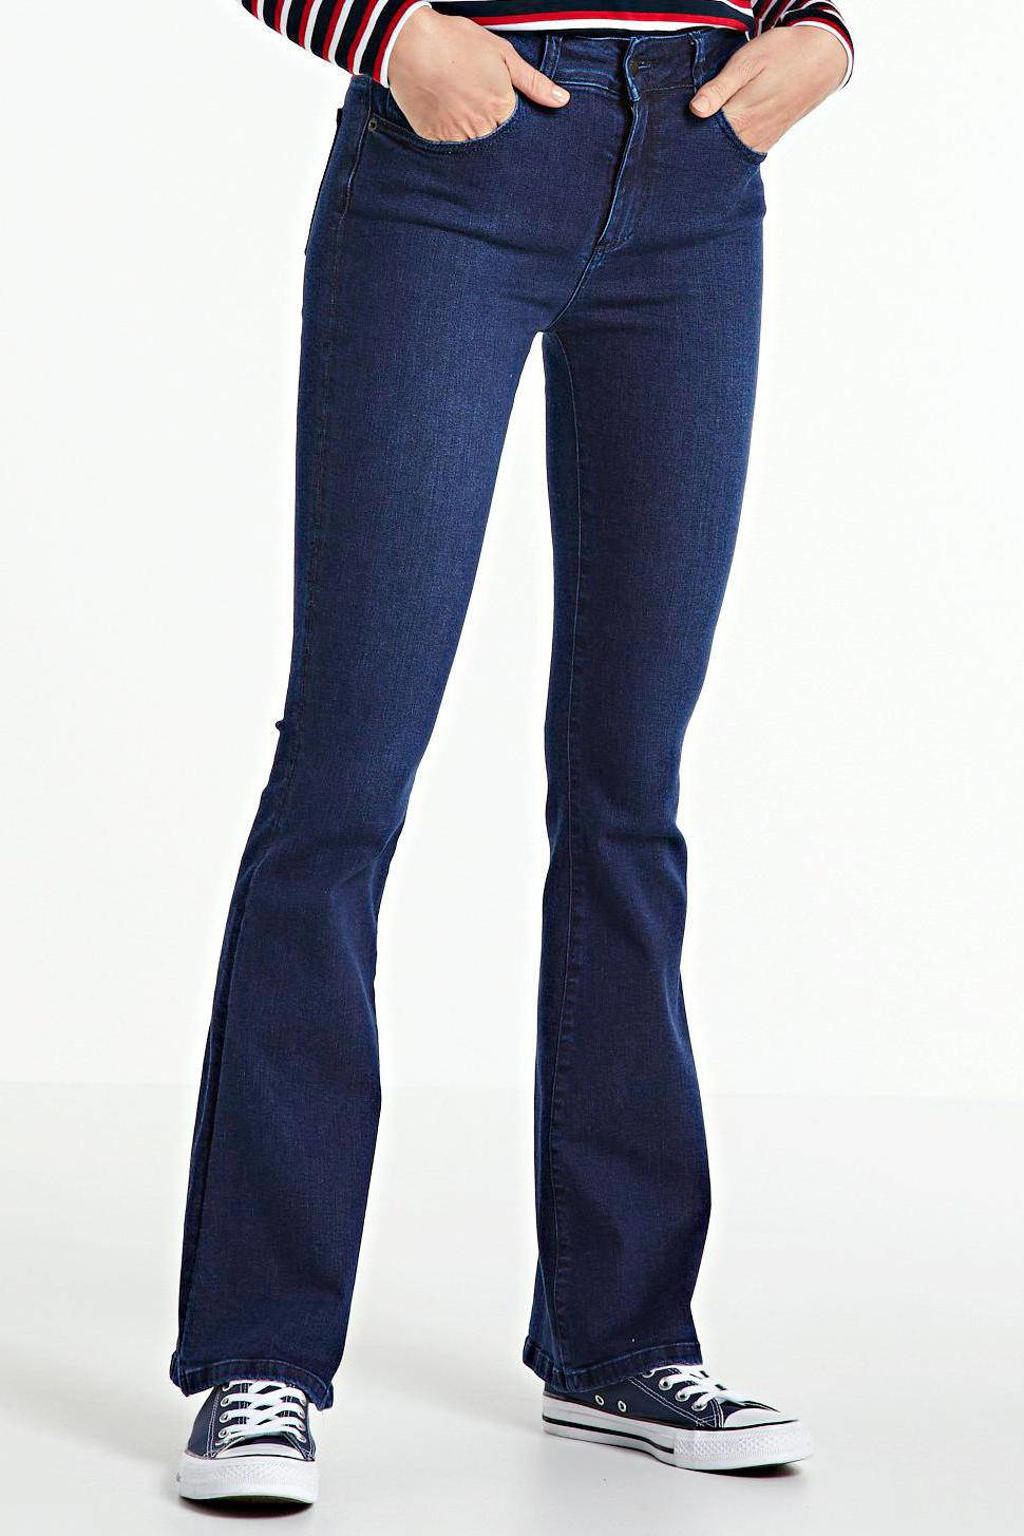 Lois high waist flared jeans Raval-16 navy blue